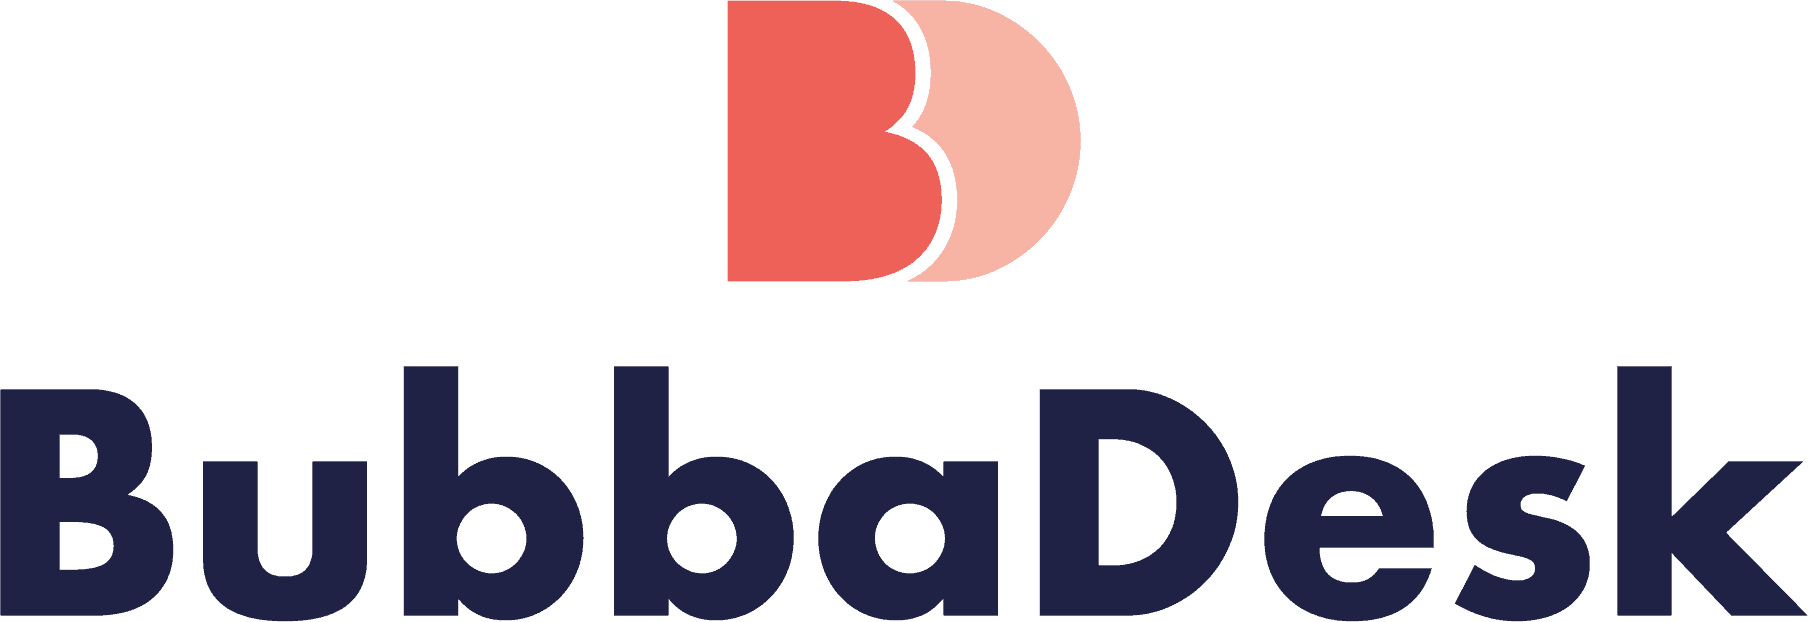 BubbaDesk logo